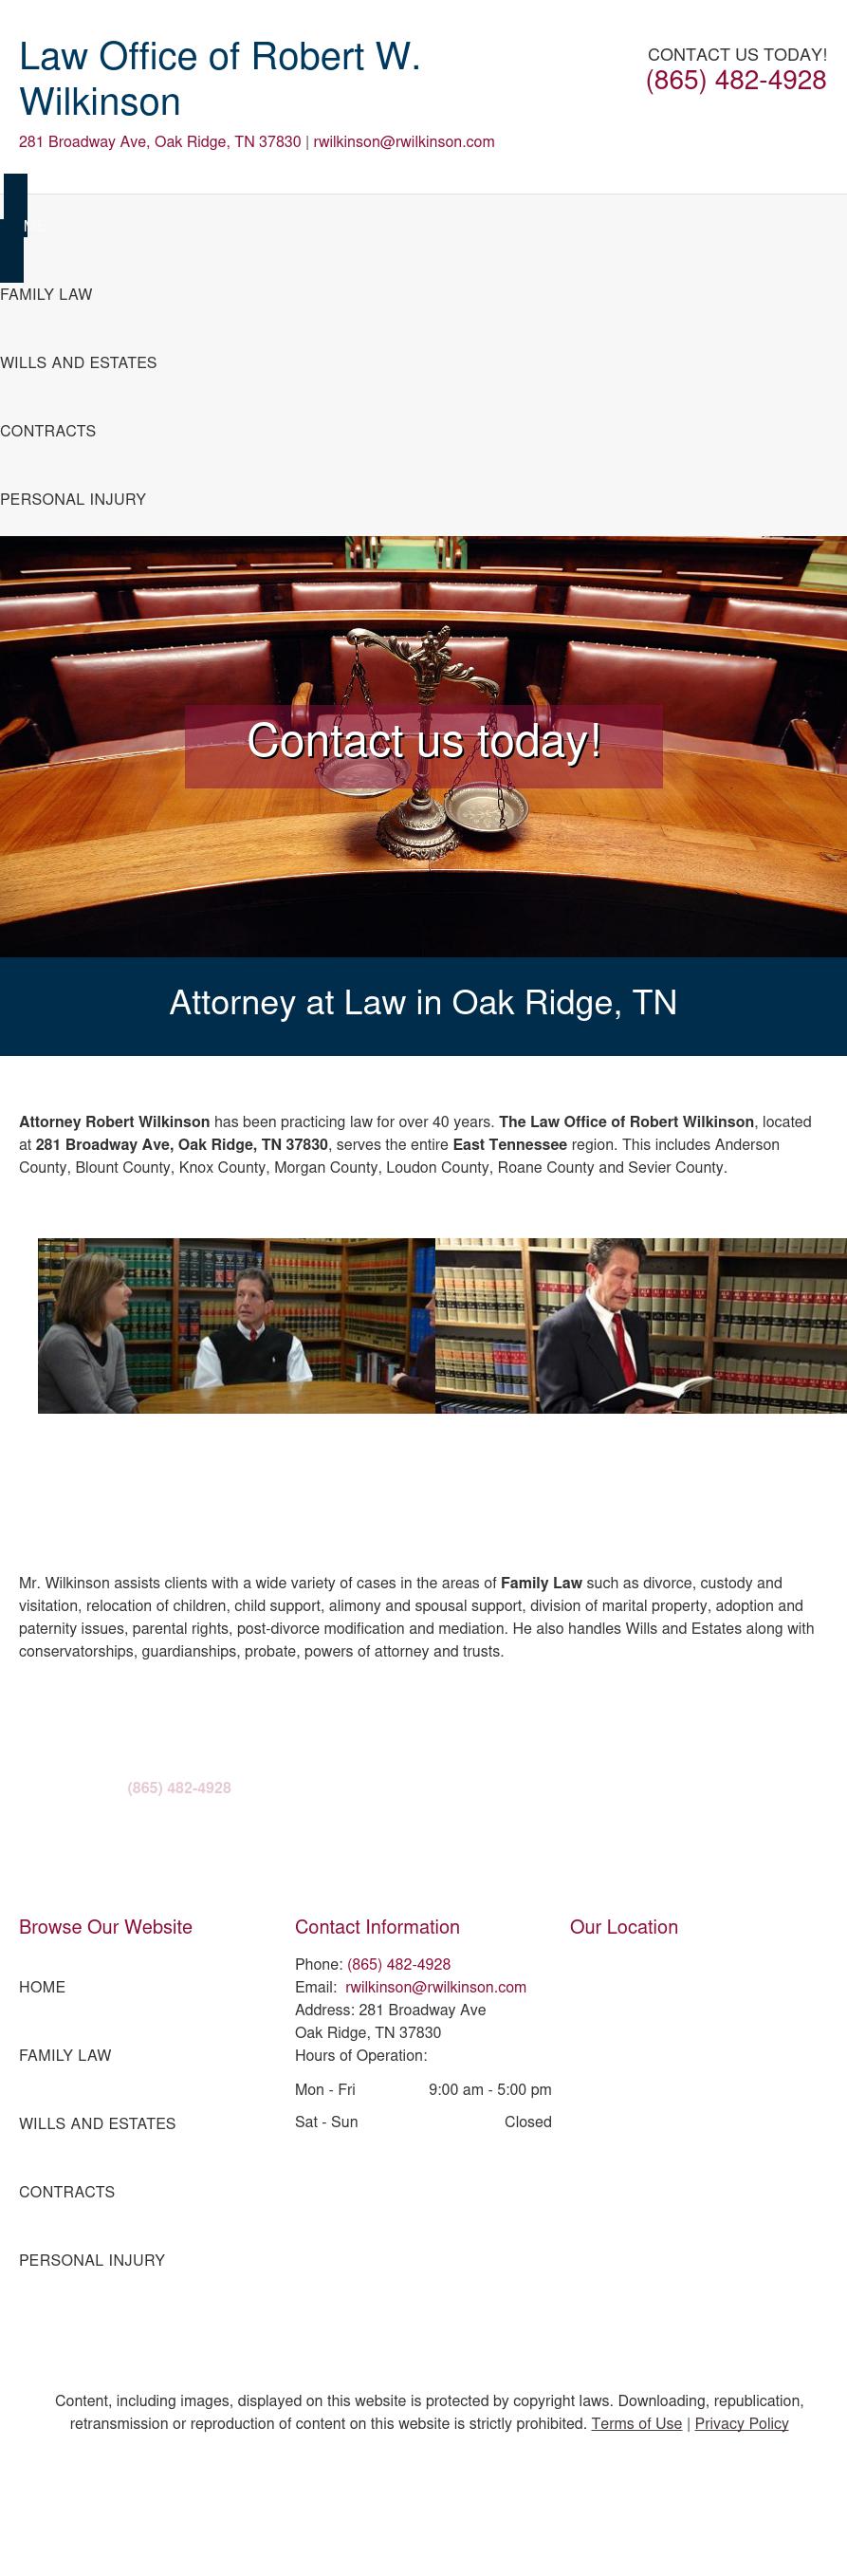 Wilkinson, Robert W - Oak Ridge TN Lawyers